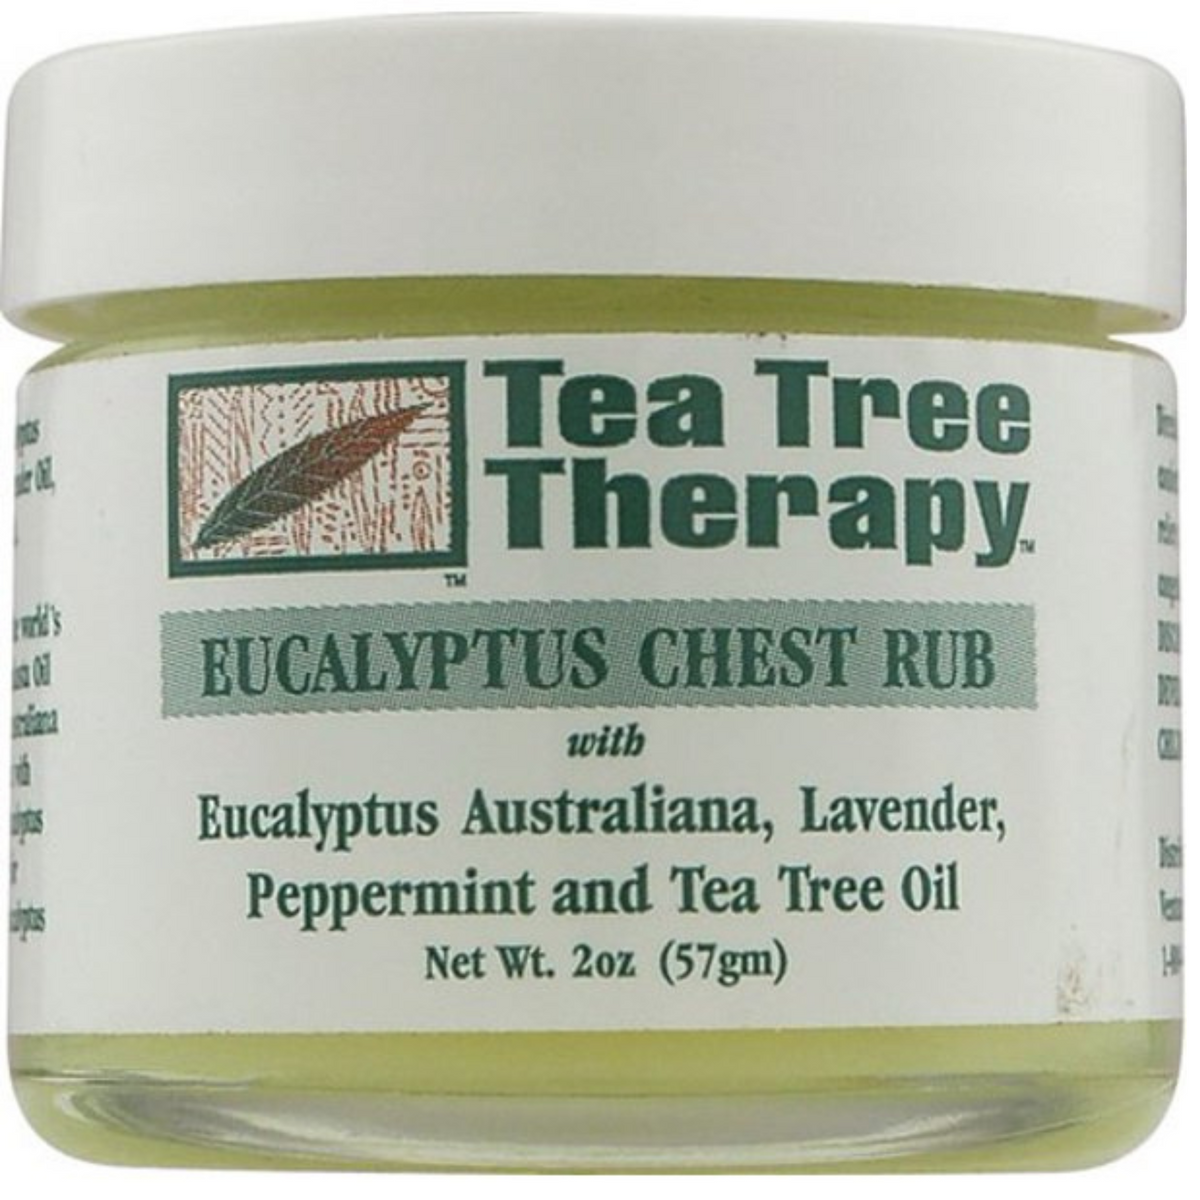 Primary Image of Tea Tree Therapy Eucalyptus Chest Rub (2 oz)